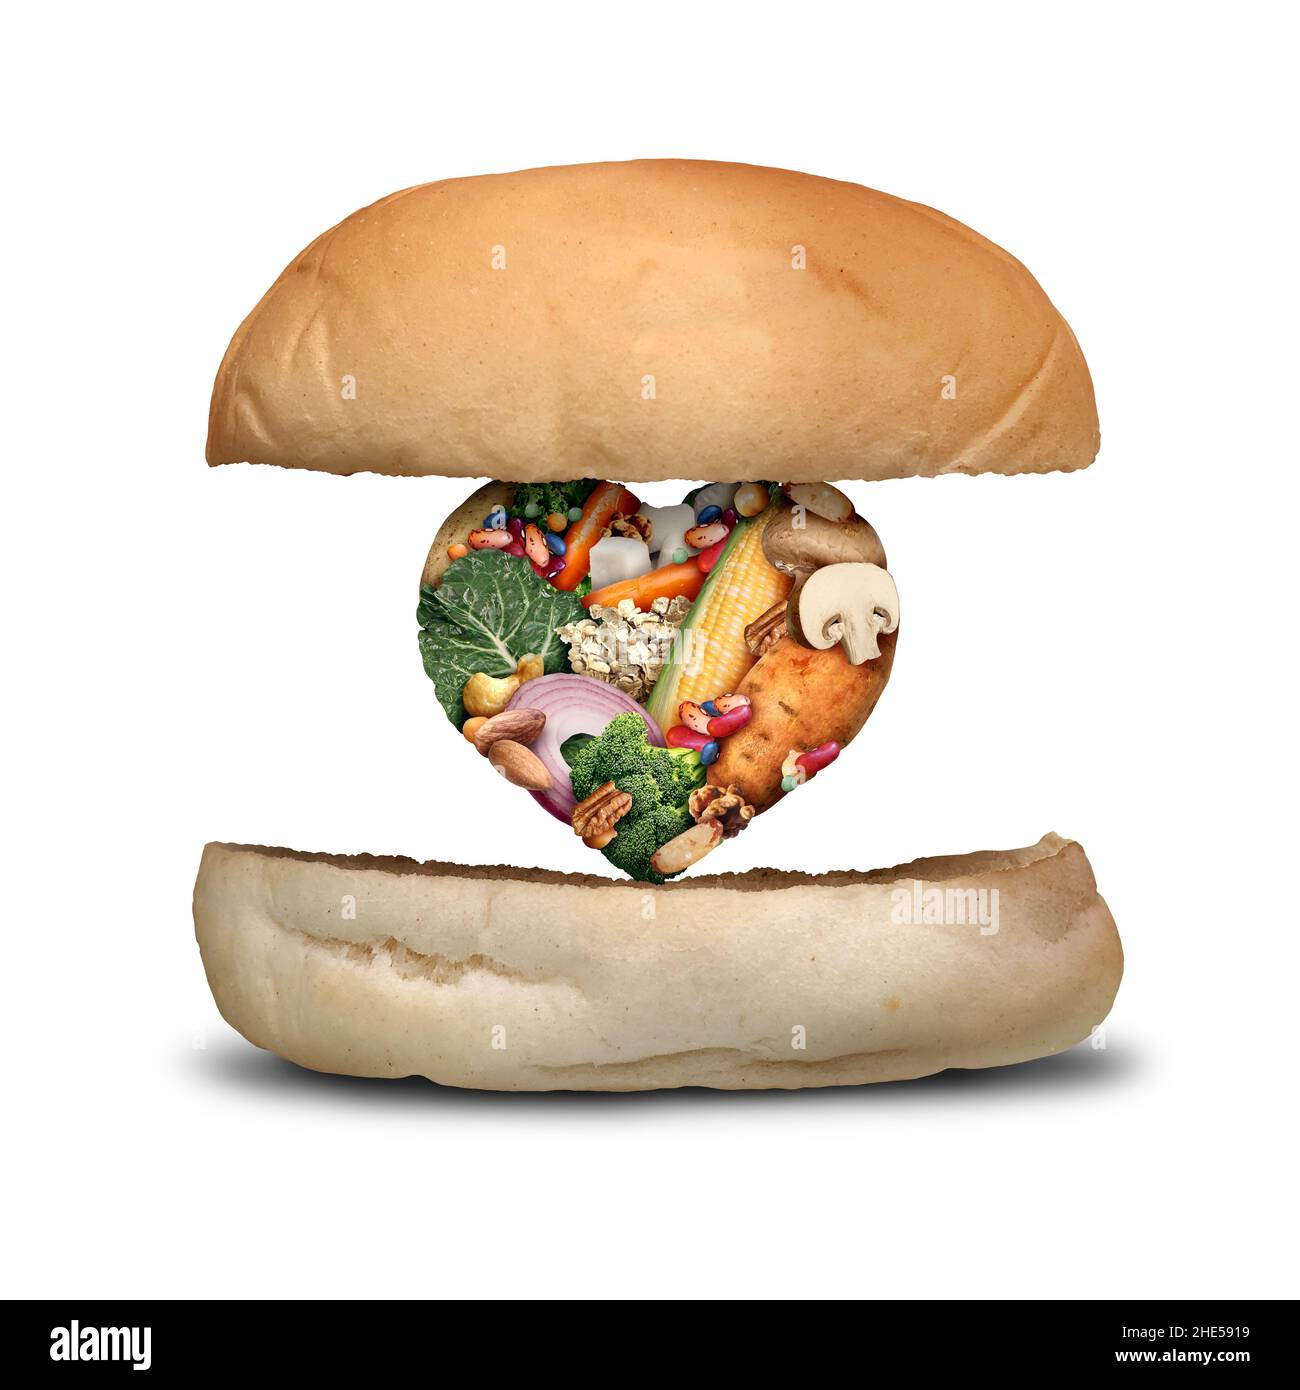 Concepto de hamburguesa vegana como planta vegetal basada patty para hamburguesas en una dieta vegetariana hecha con frijoles patatas verduras setas en forma de corazón. Foto de stock